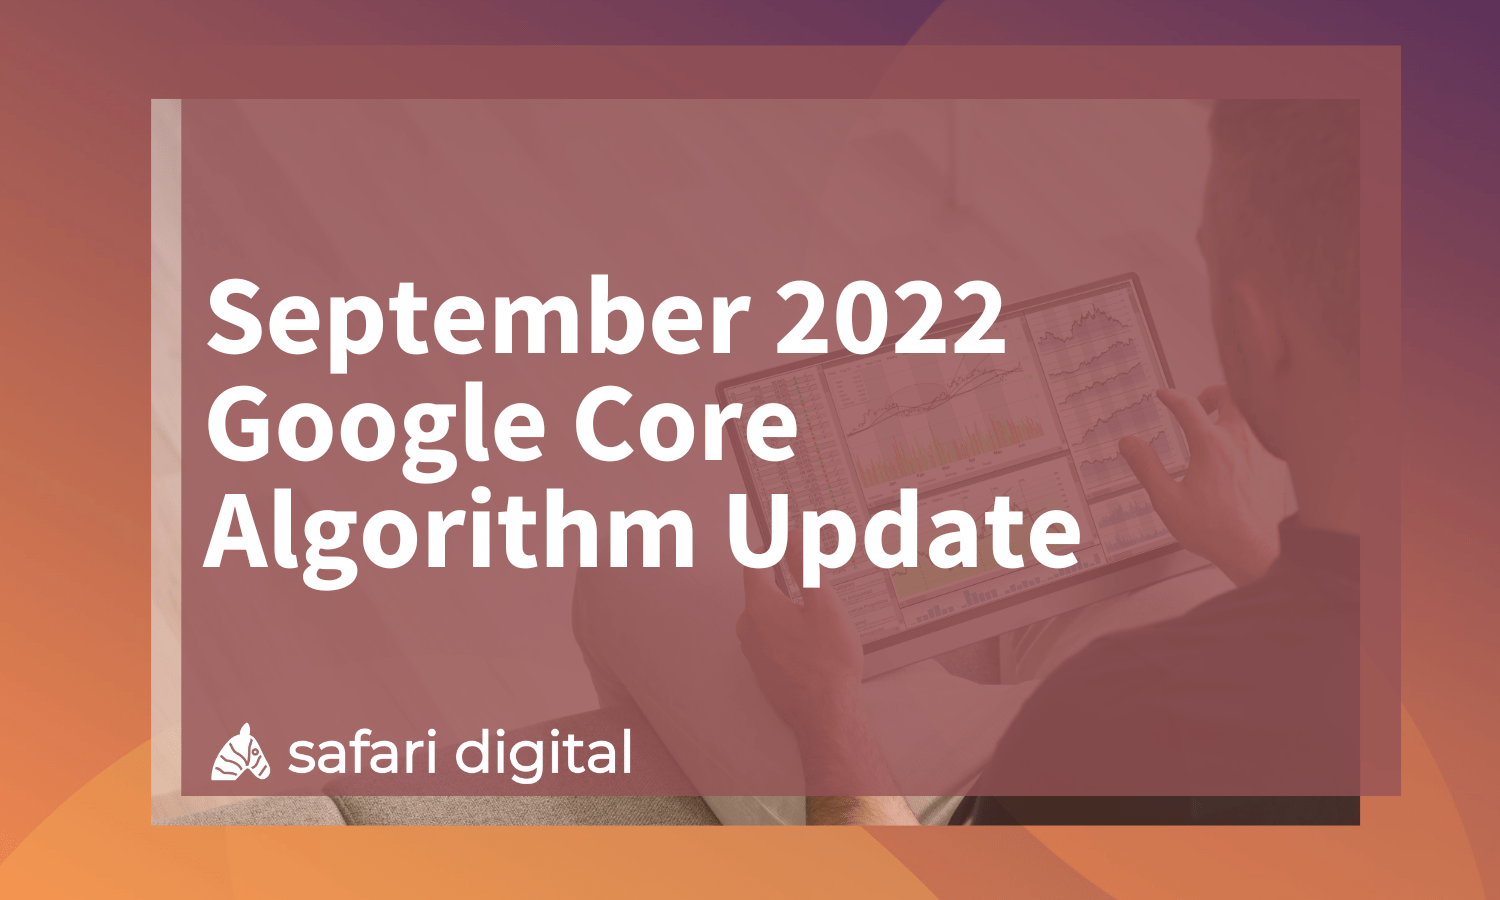 September 2022 Google Core Algorithm Update Announced